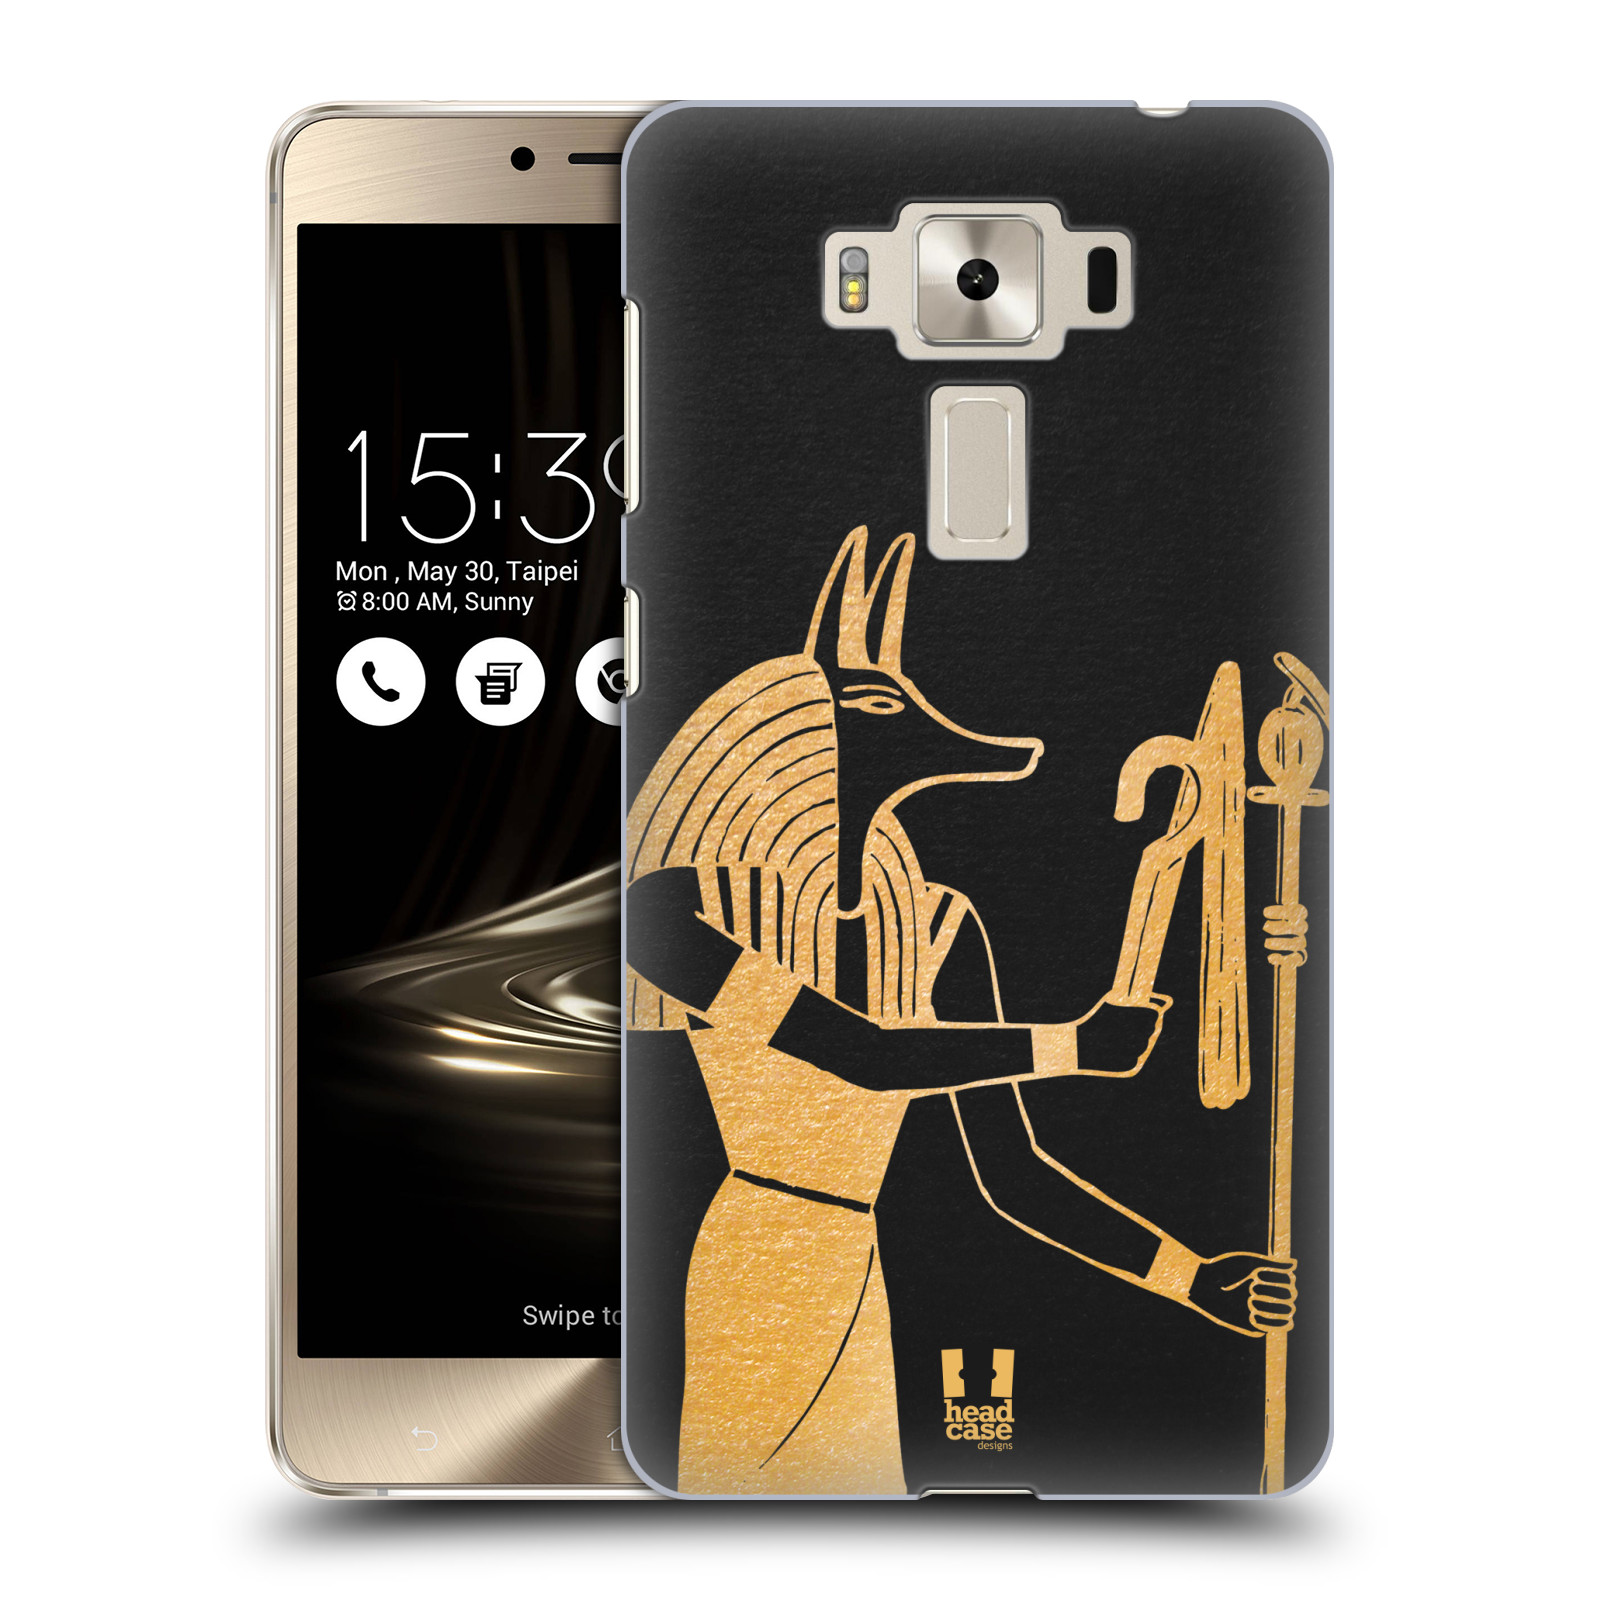 HEAD CASE plastový obal na mobil Asus Zenfone 3 DELUXE ZS550KL vzor EGYPT zlatá a černá Anubis